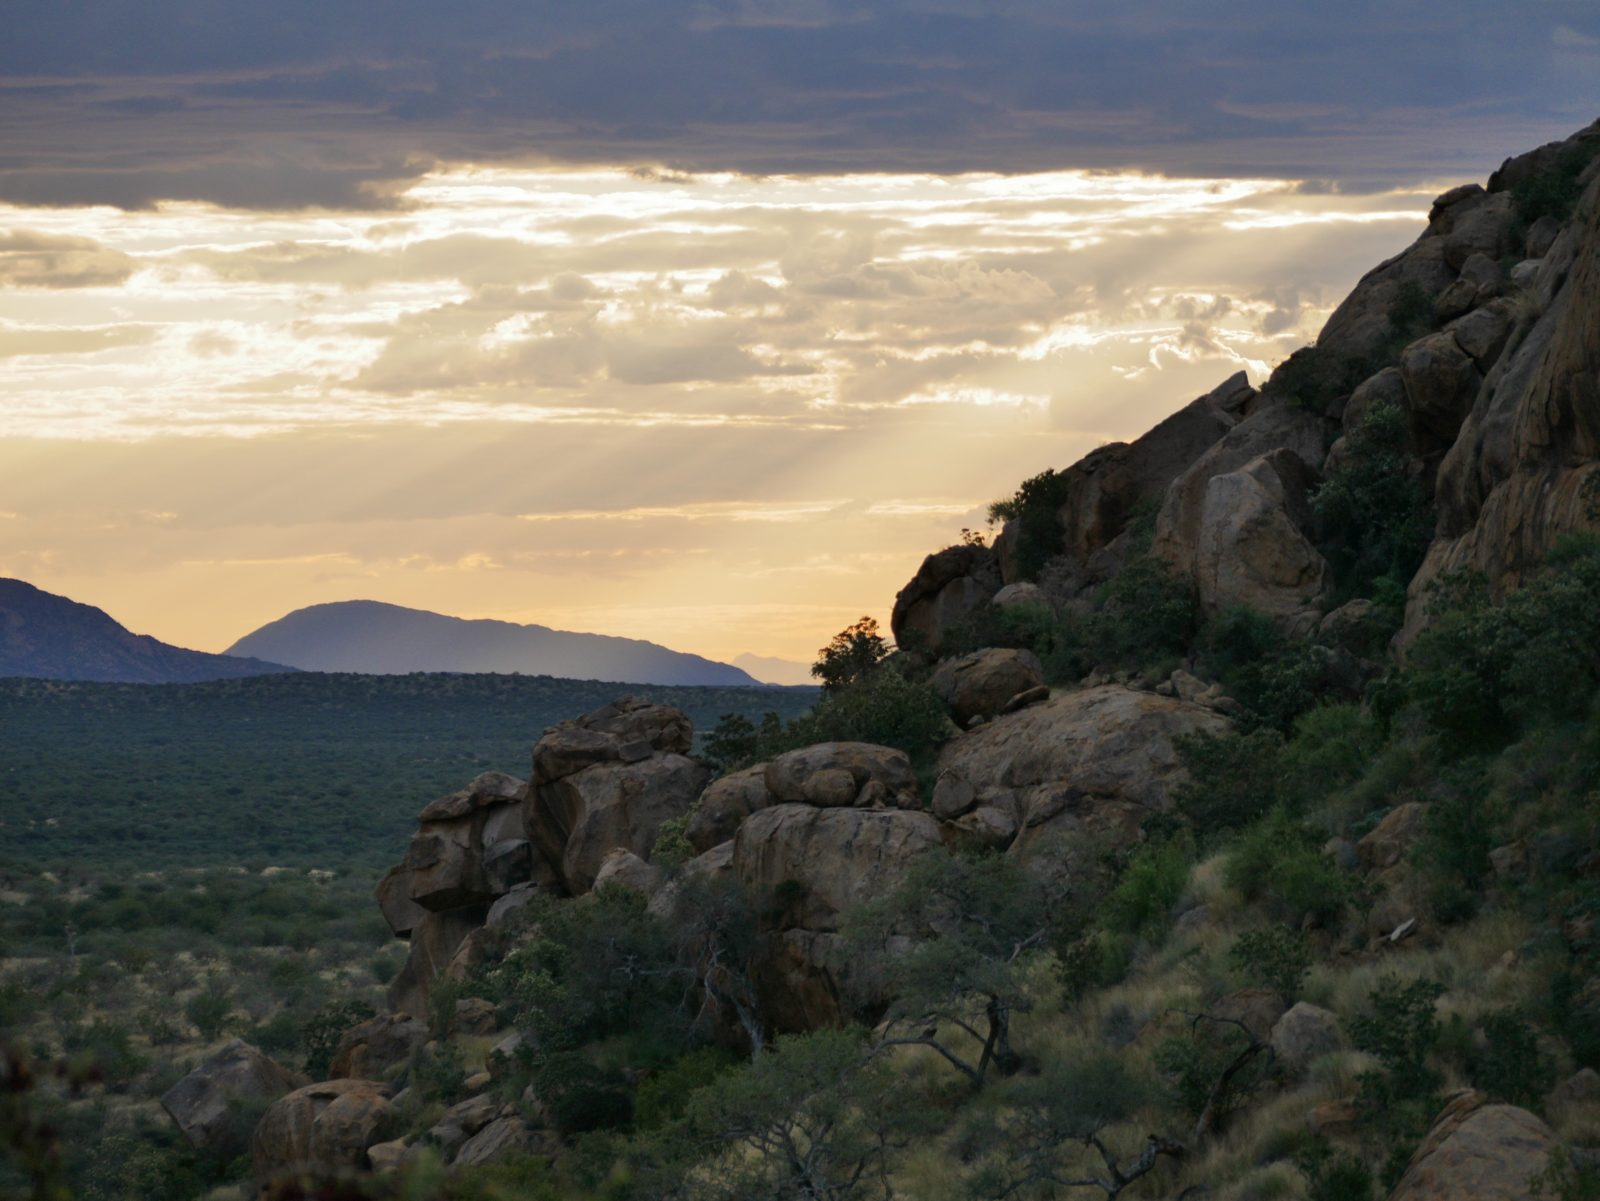 Route für Namibia Rundreise: Windhoek, Etosha Nationalpark, Sosussvlei, Swakopmund und Kalahari